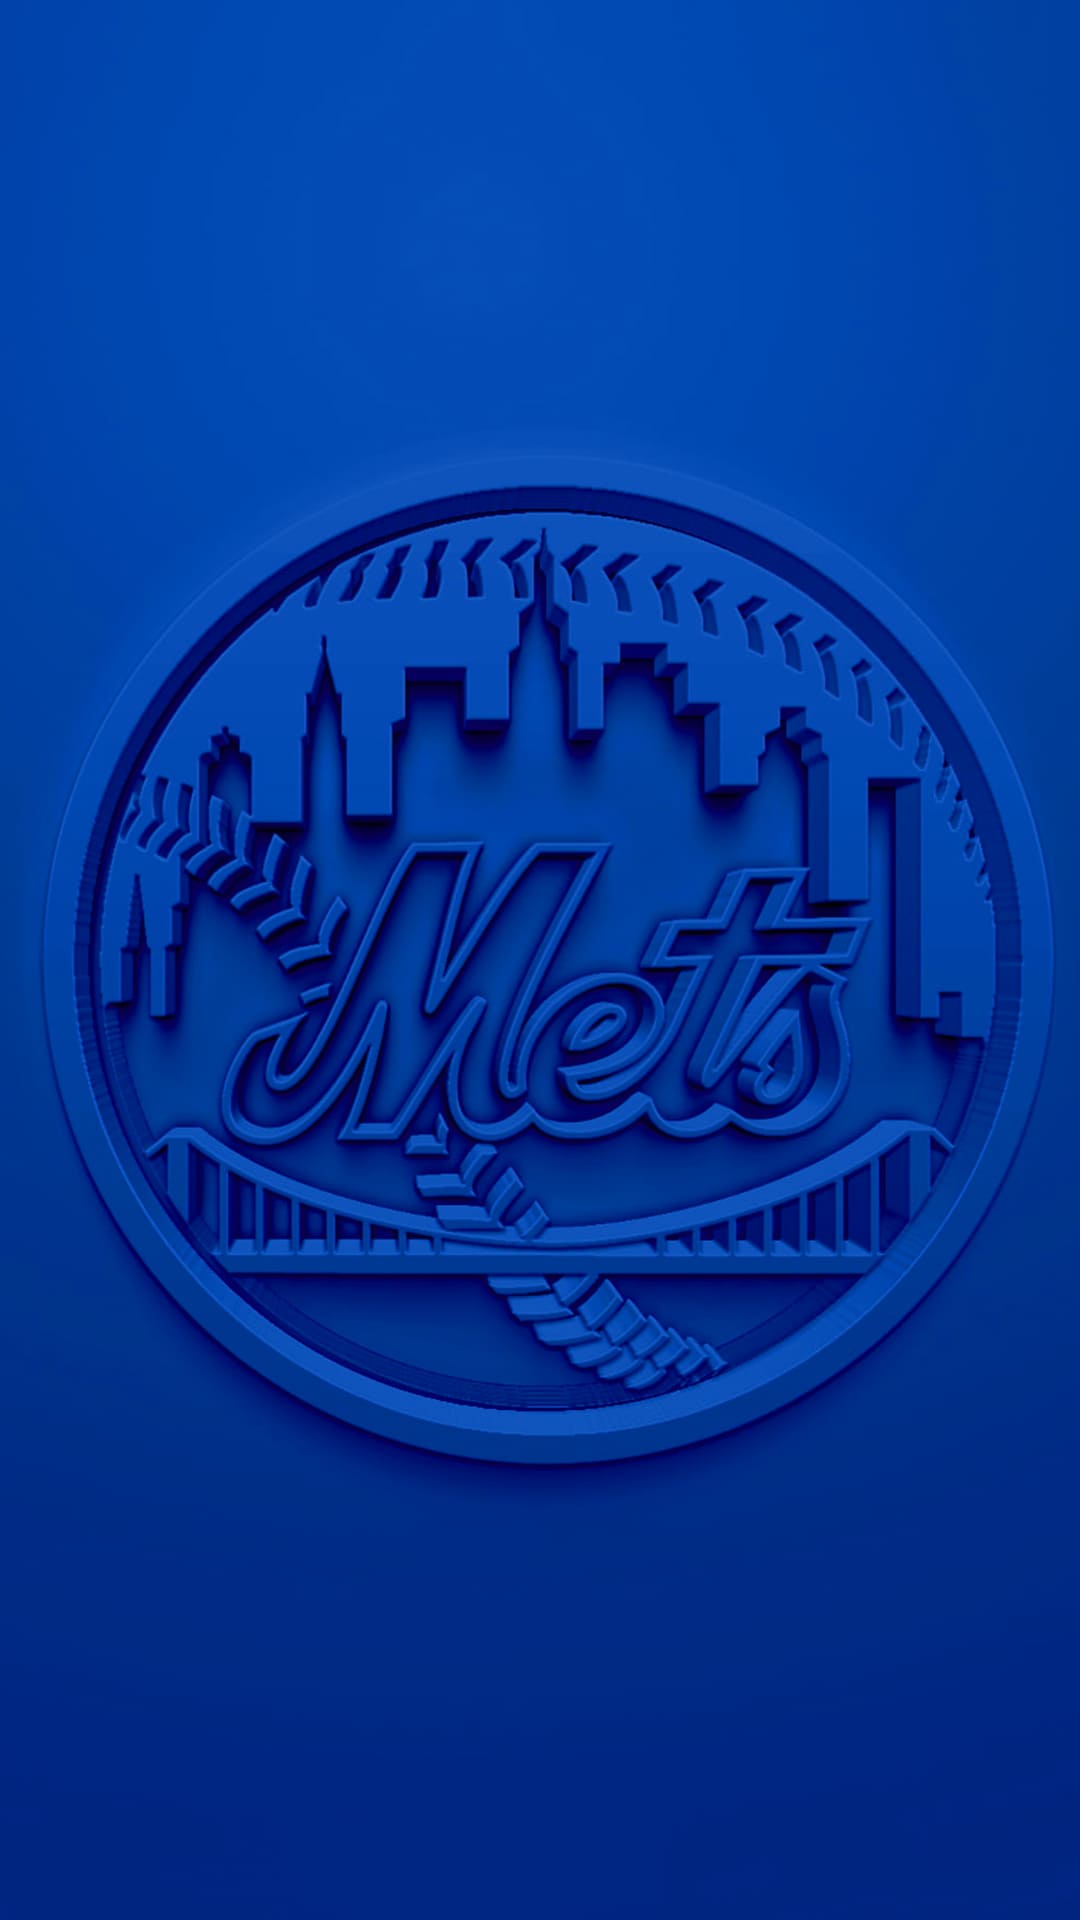 Mets Wallpaper IPhone 72 images